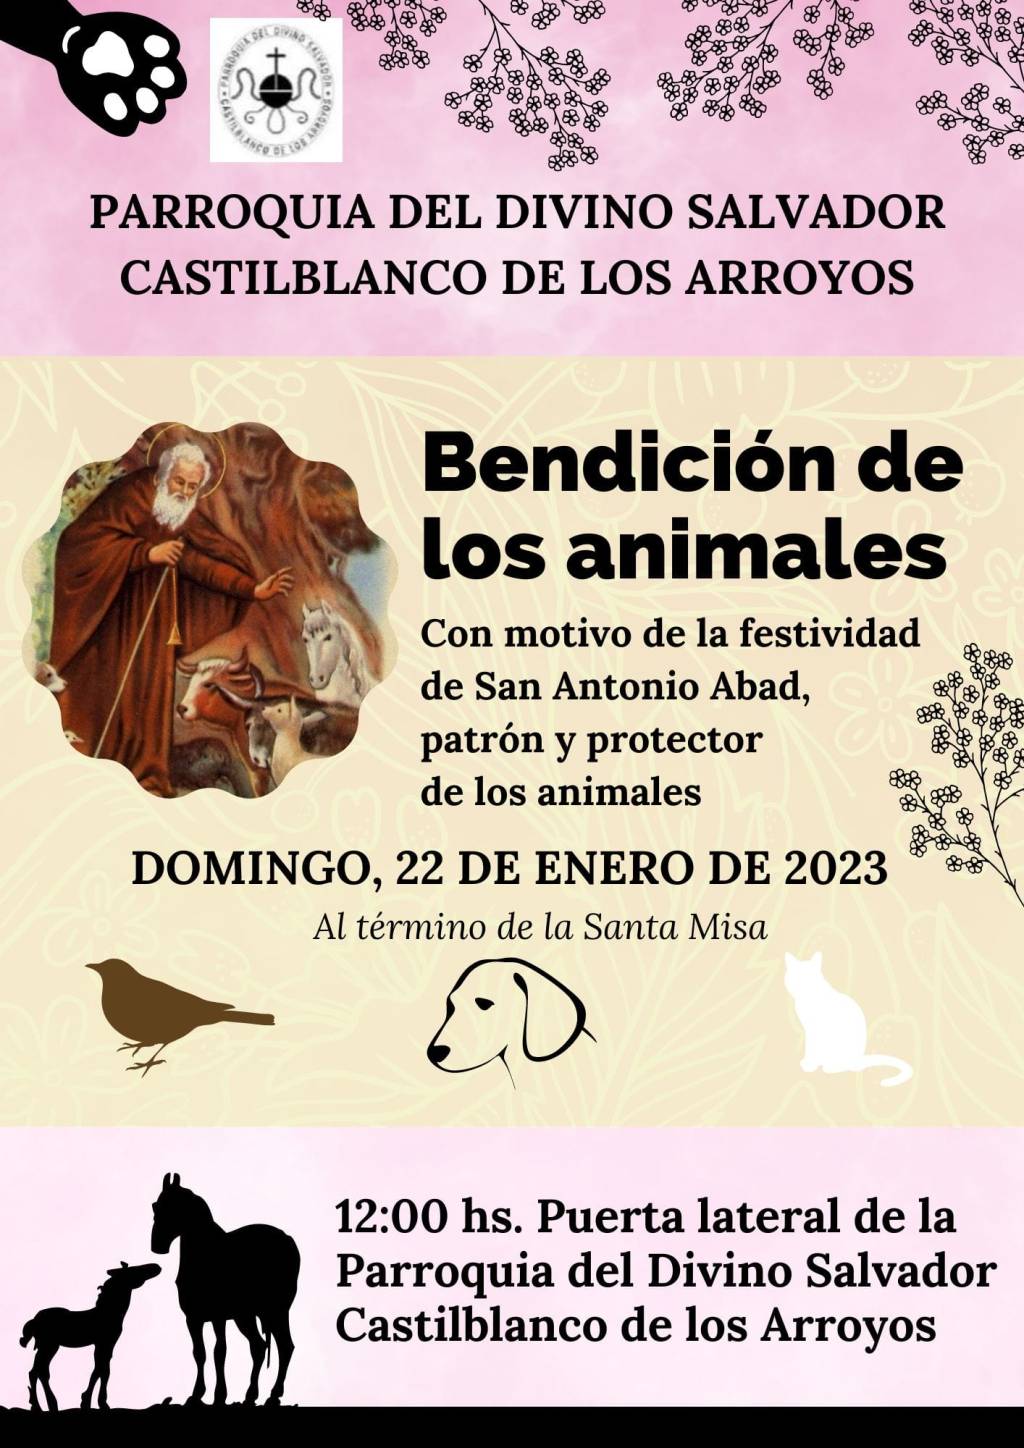 Castilblanco de los Arroyos recupera la bendición de los animales por la festividad de San Antón